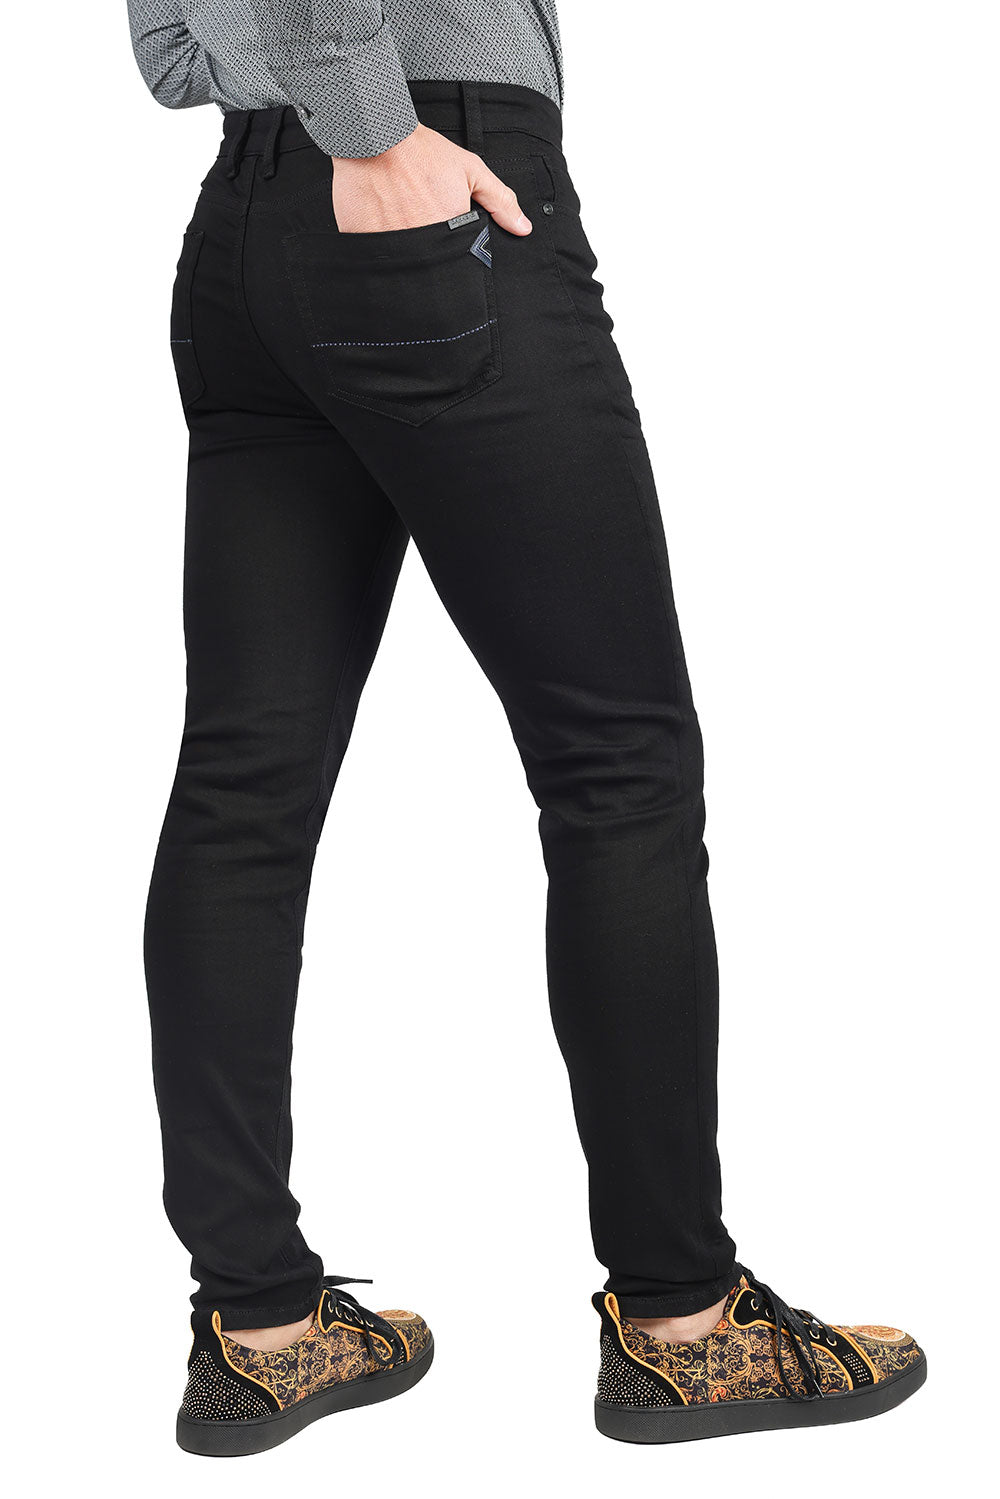 Barabas Men's Black White Navy 5 Pockets Solid Color Prints Jeans 1700 Black